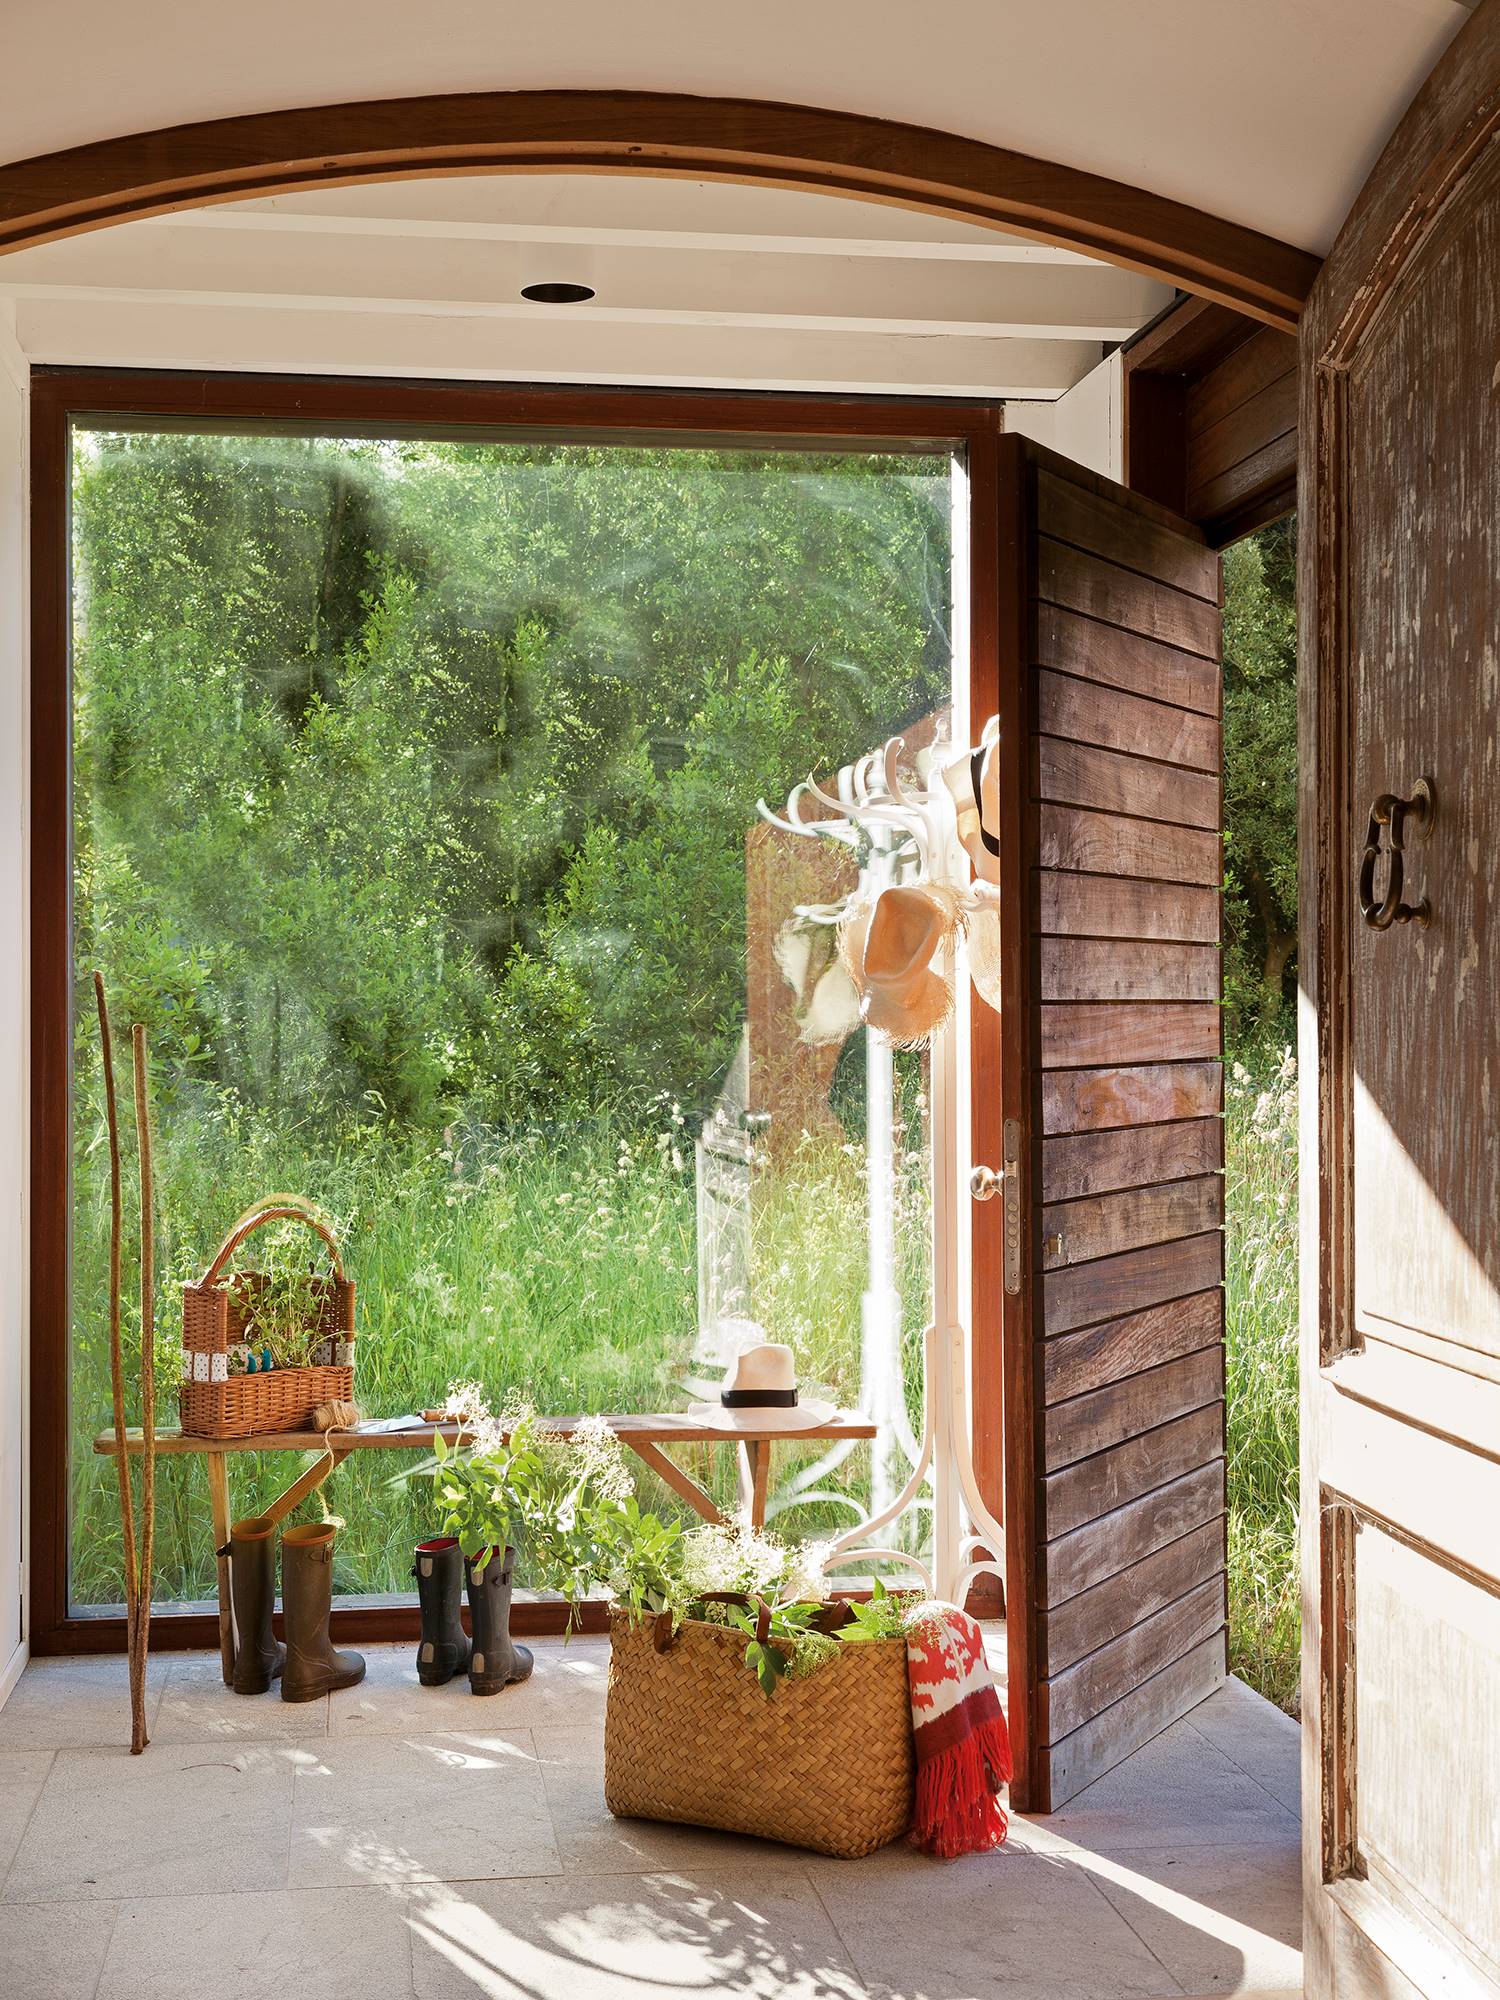 Recibidor rústico con banco de madera y ventanal con vistas al campo